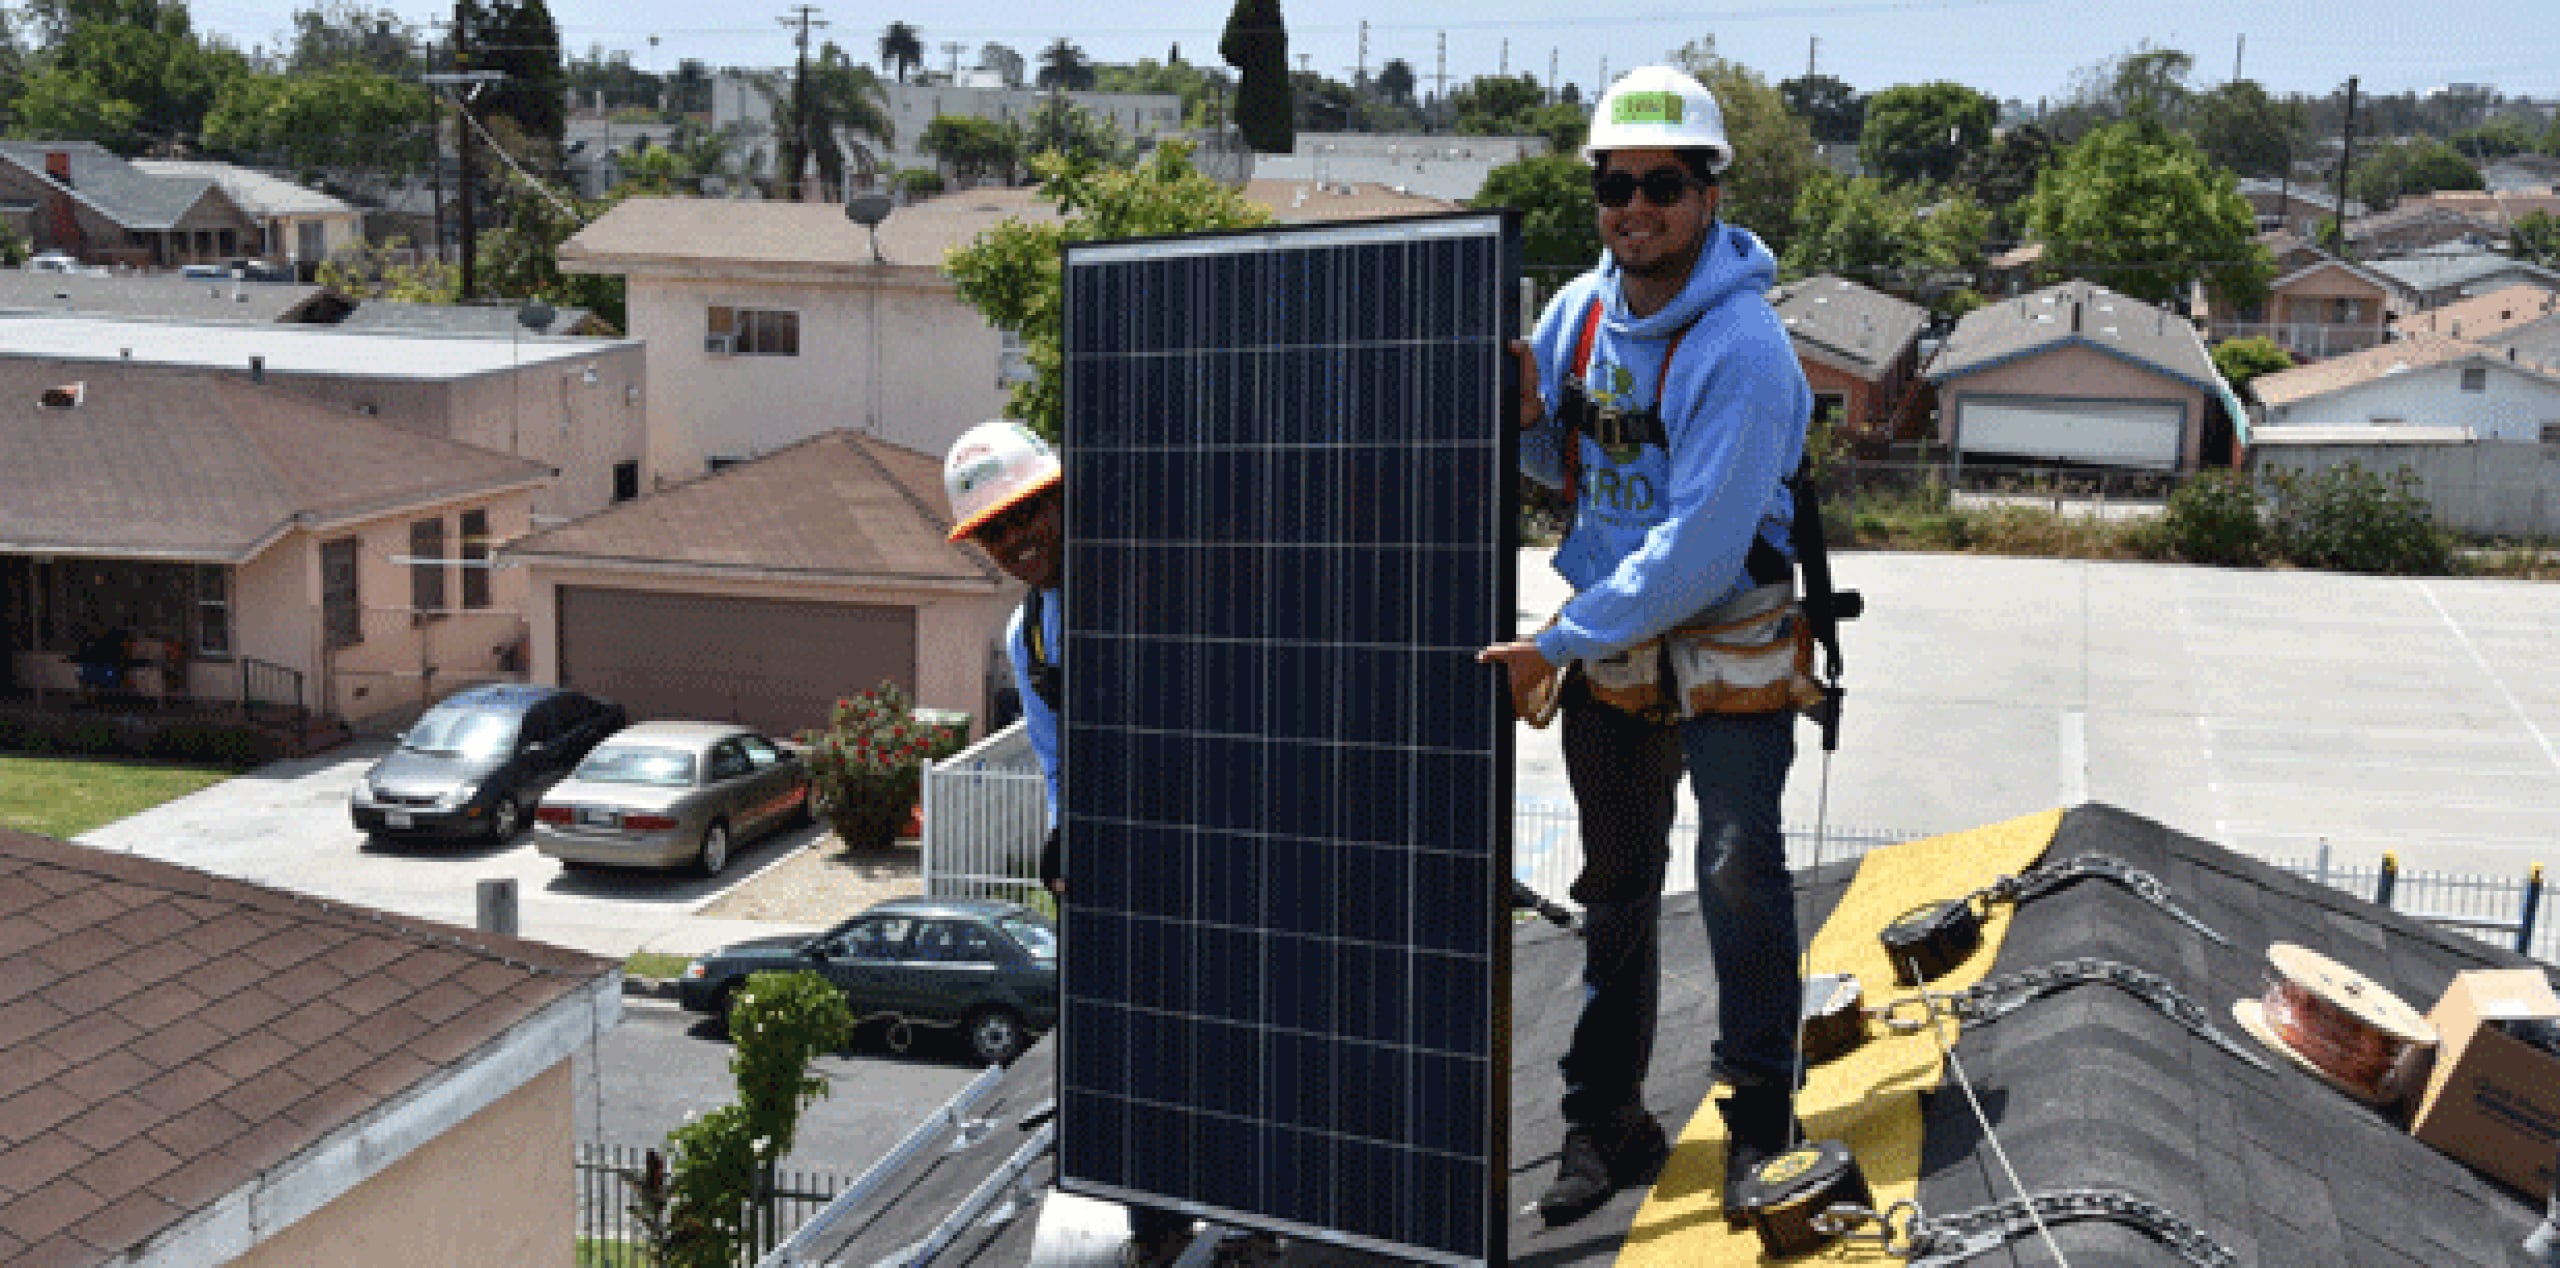 Julian Foley, directora de comunicaciones de Grid Alternatives, dijo a Efe que su organización, con los fondos de beneficio para comunidades en desventaja, "ya preparó 177 casas con paneles solares en California y alrededor del 45 % son de familias latinas". (EFE)